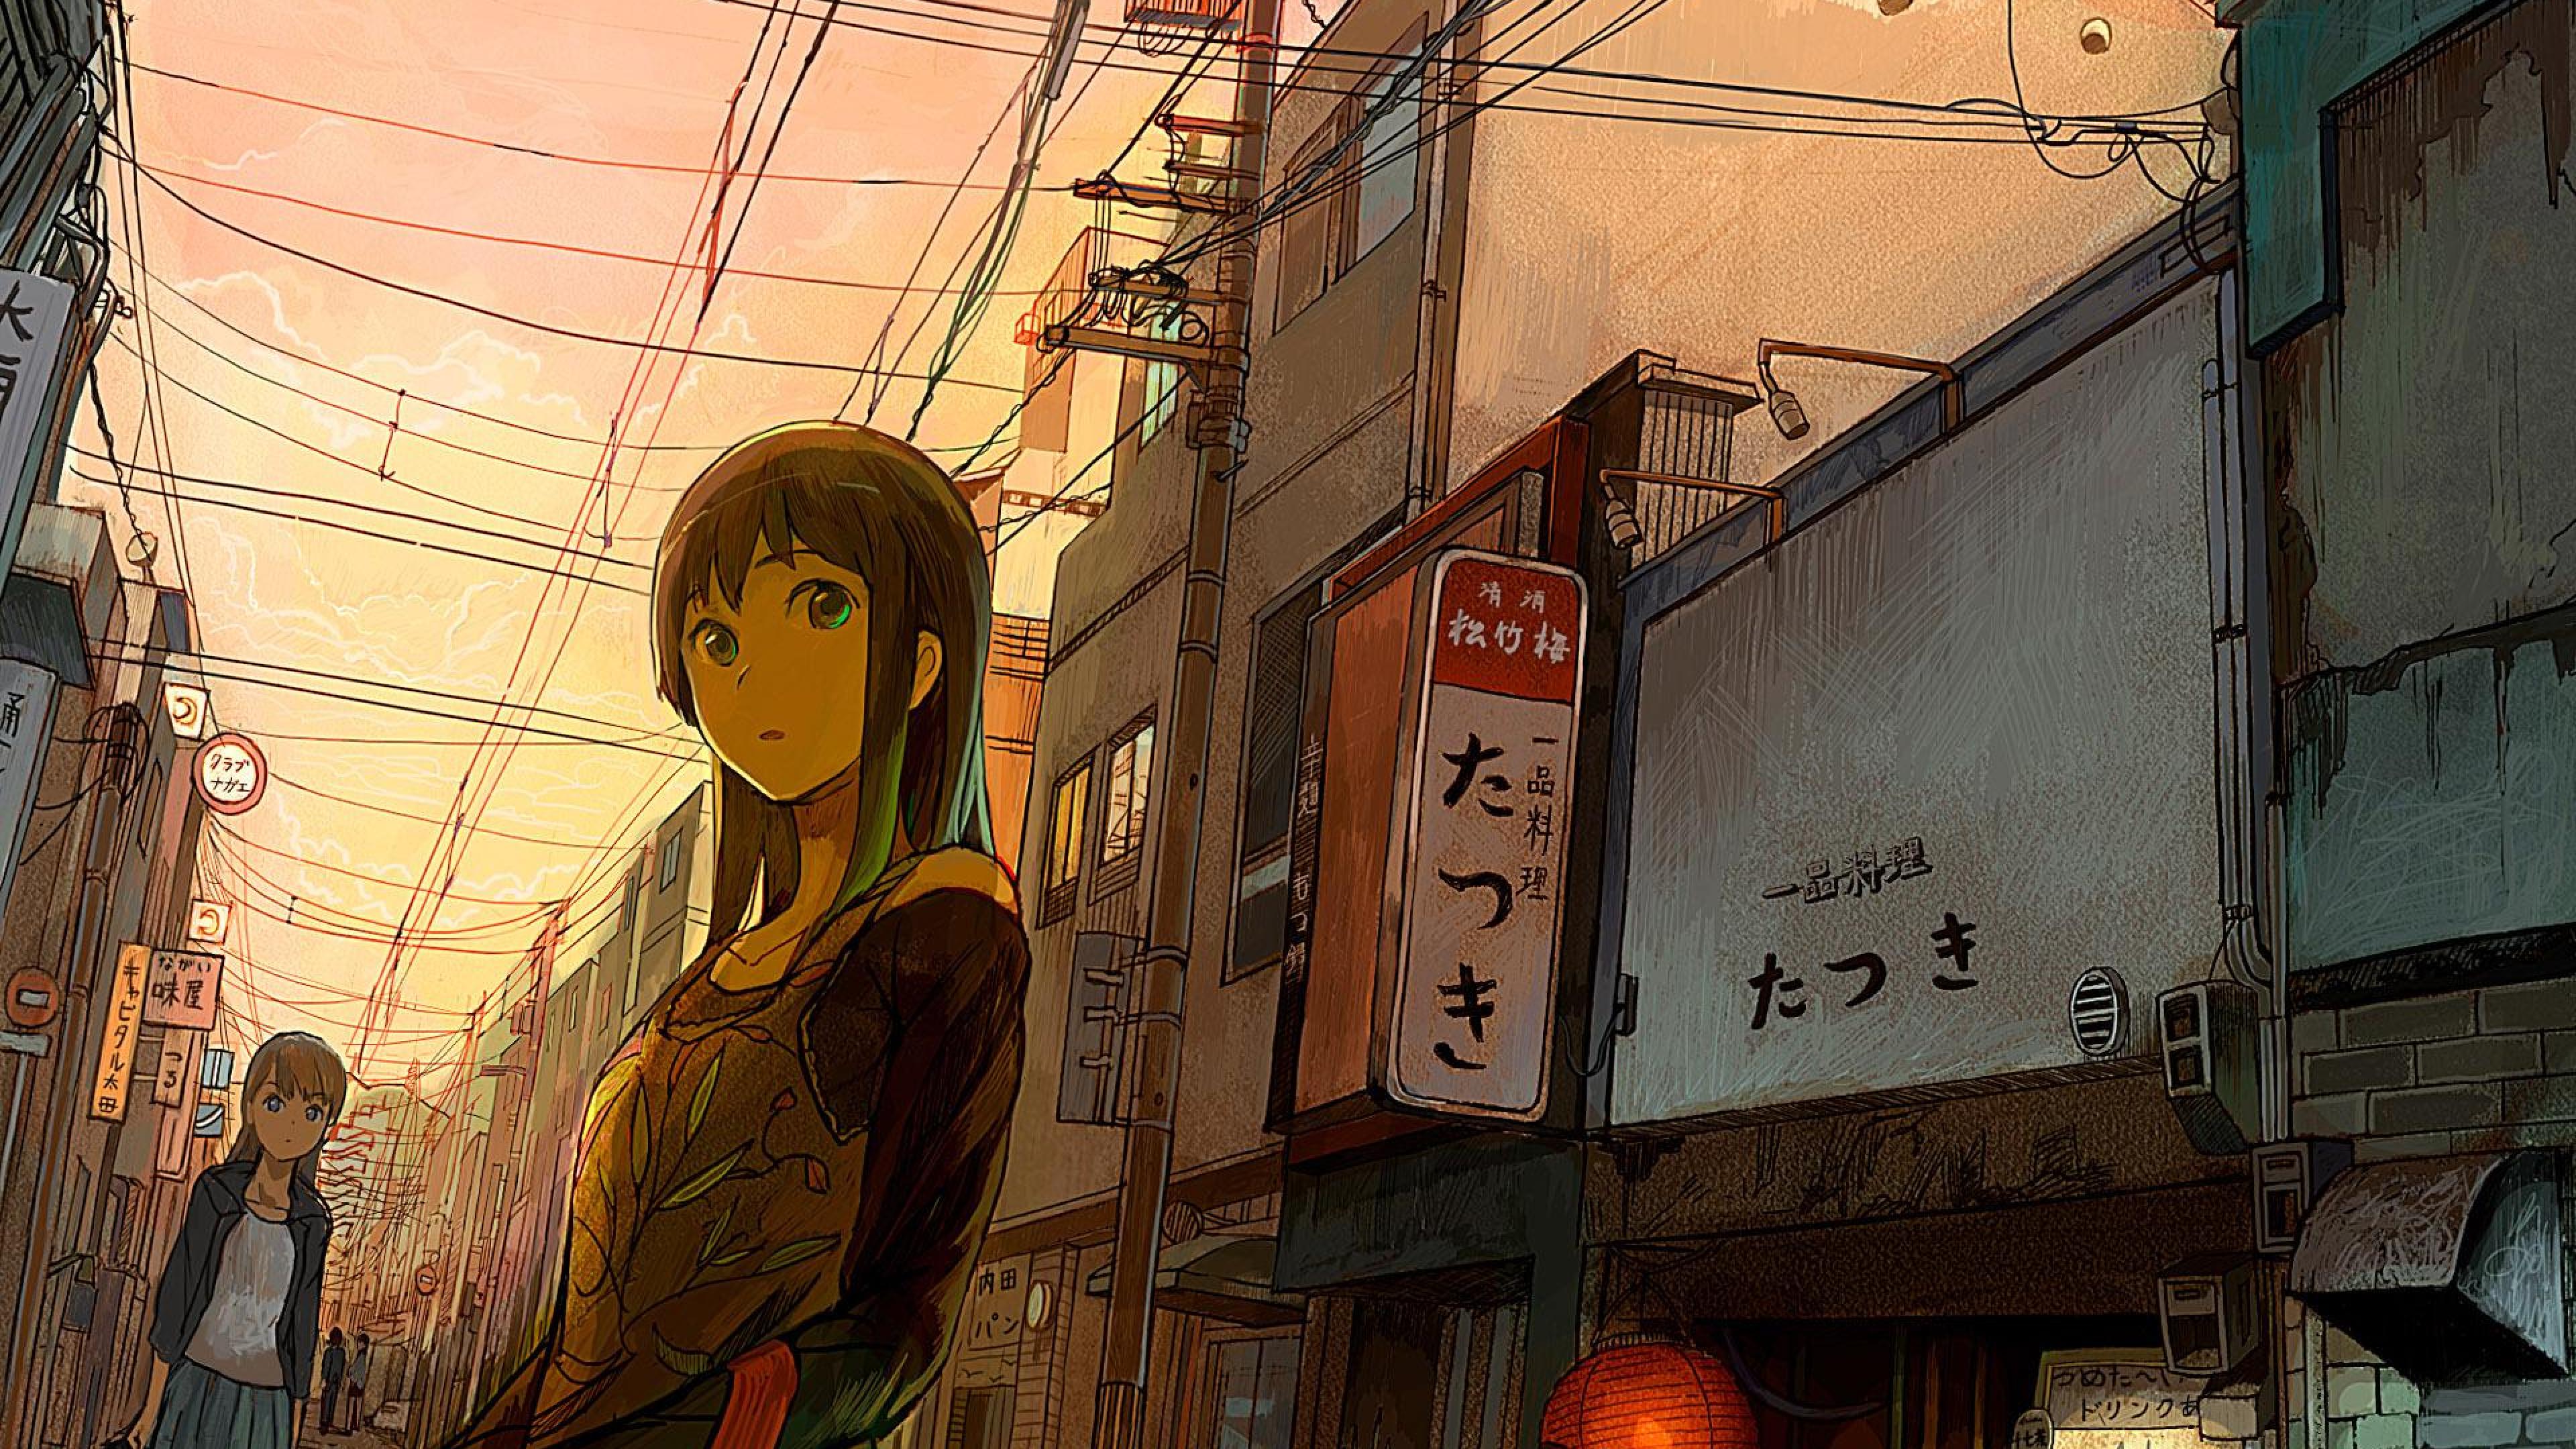 Anime City Wallpaper 4k